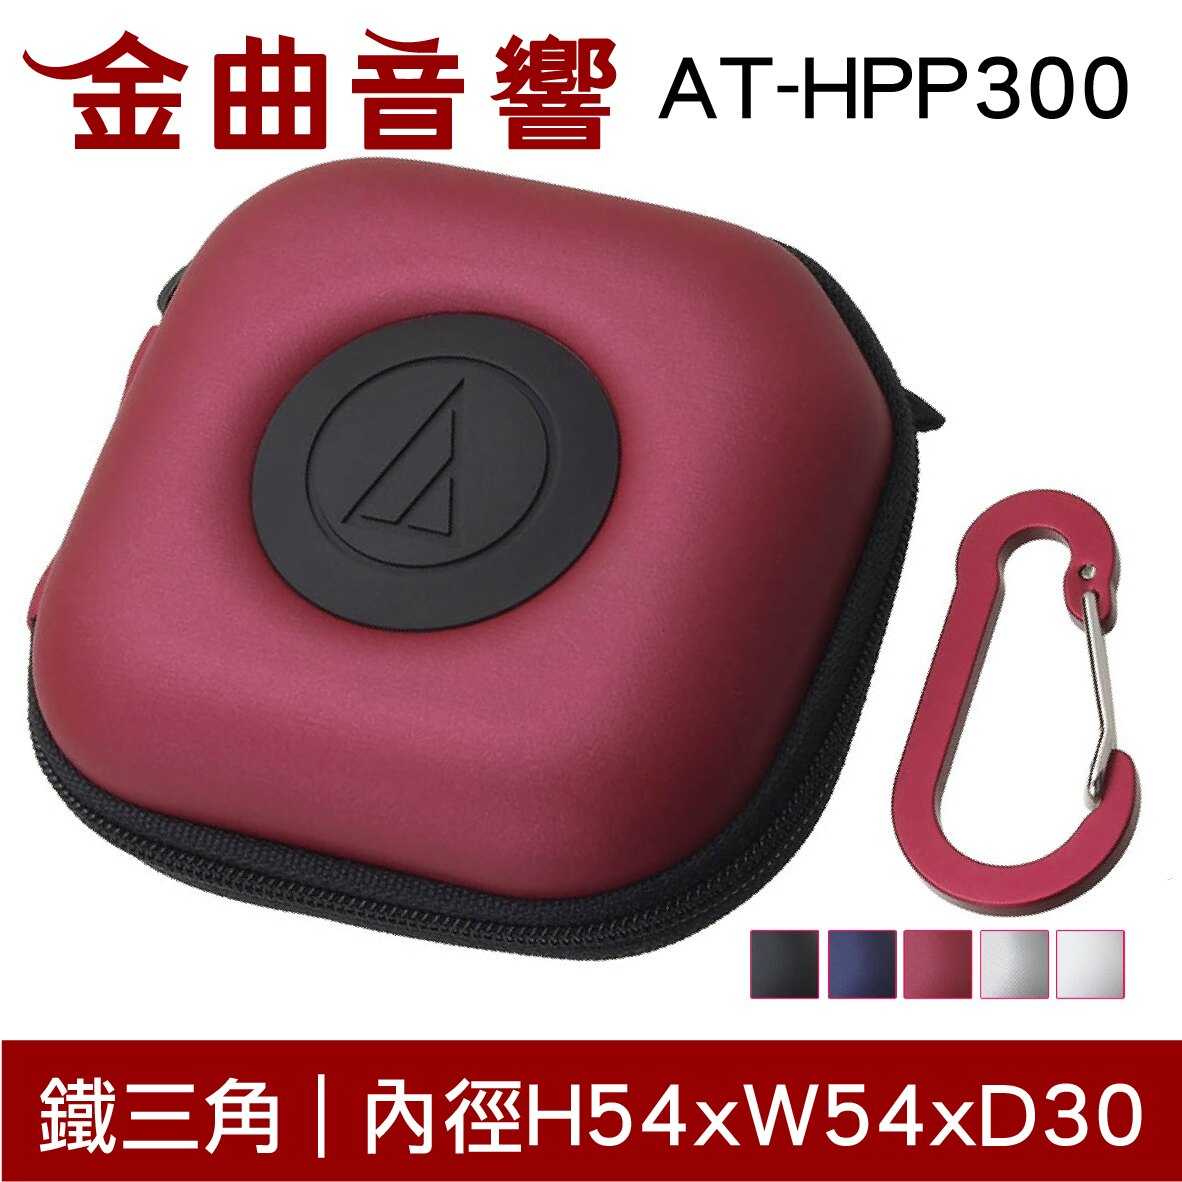 鐵三角 AT-HPP300 紅色 硬殼多功能 耳機收納盒 耳機 收納盒 | 金曲音響